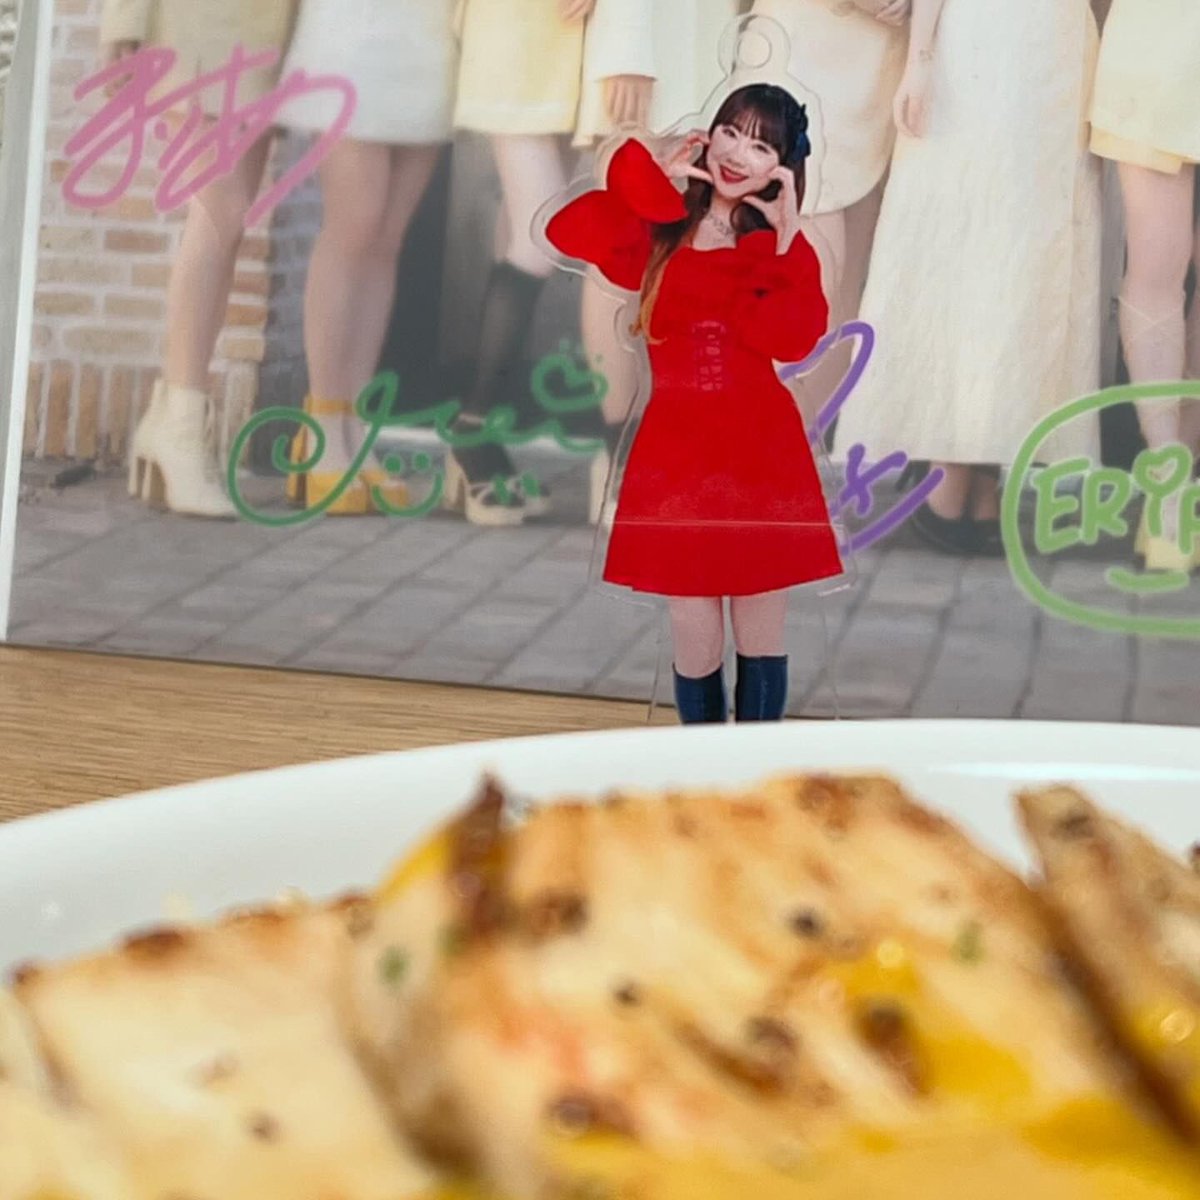 今日の昼食はあゆみんお気に入りの宮城のレトルトカレーブランド「ニシキヤキッチン」のマンゴーチキンカレーを食べました。あゆみんがあらあらかしこ石田亜佑美が行くっ！で商品開発を学んだカレーですね。まろやかで美味しいカレーでした。角切りのマンゴーを食べた時のお得感がチョト嬉しかったです